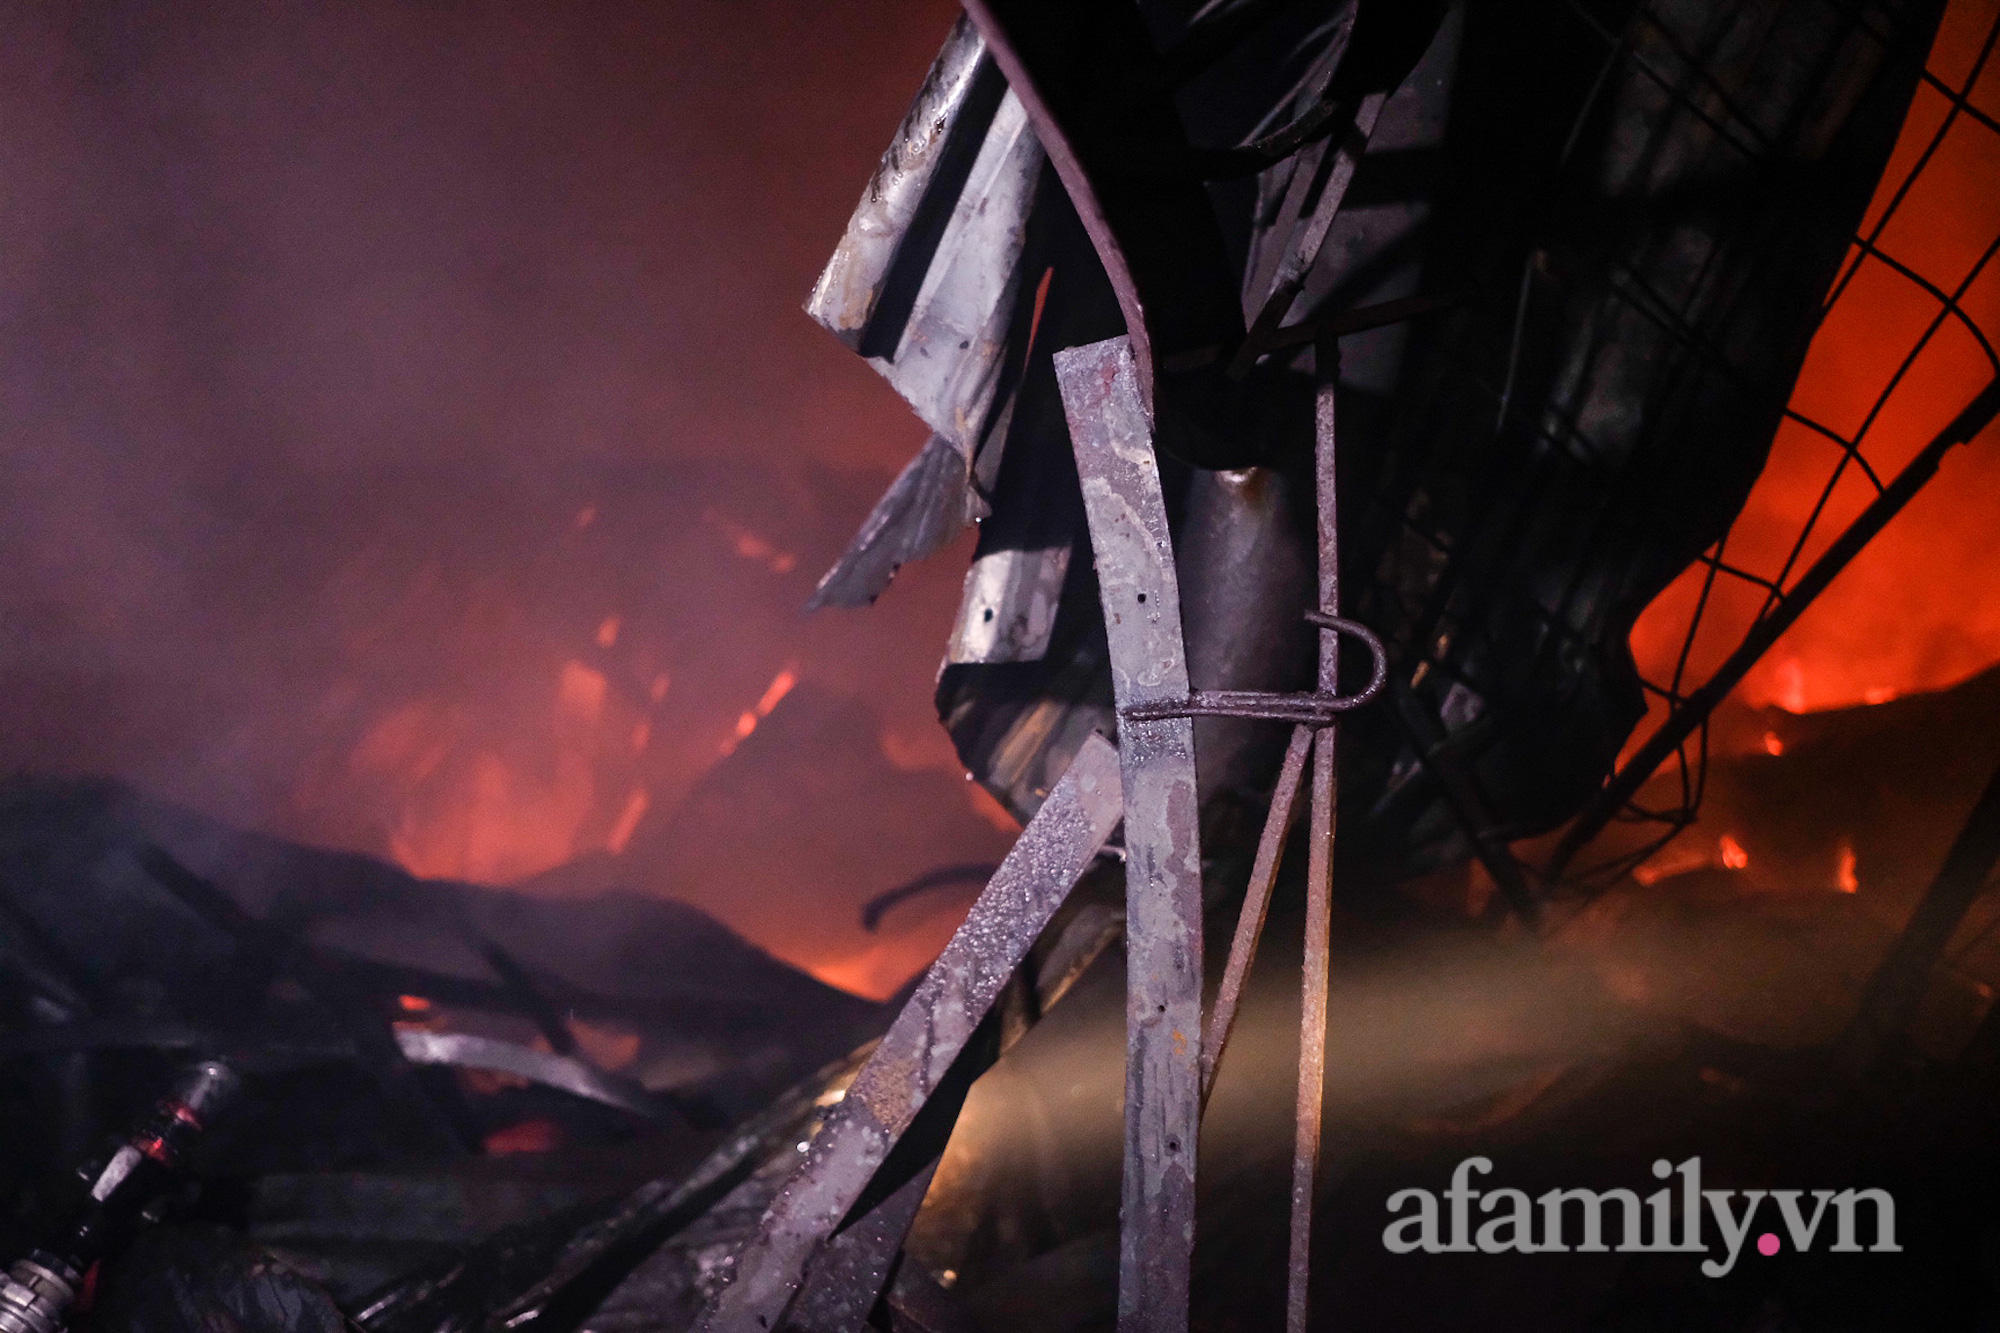 NGAY LÚC NÀY: Đang cháy lớn kho vải chợ Ninh Hiệp, hơn 4 tiếng vẫn chưa thể dập tắt - Ảnh 4.